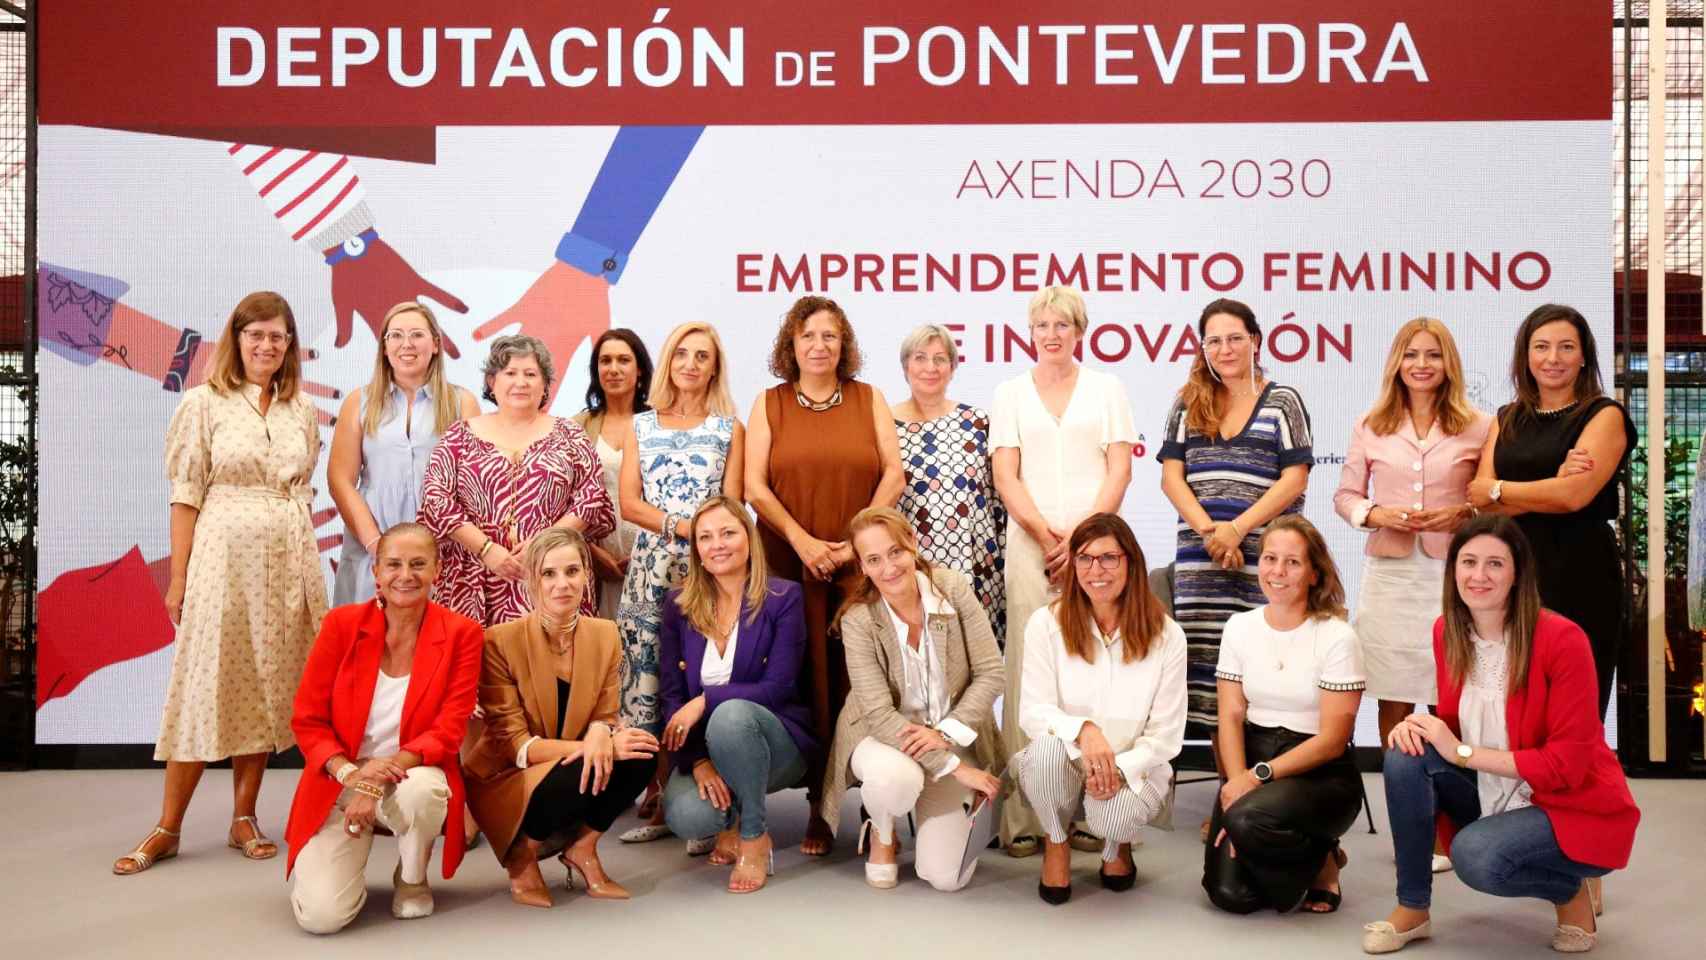 Pontevedra acoge una jornada con referentes femeninos en emprendimiento e innovación